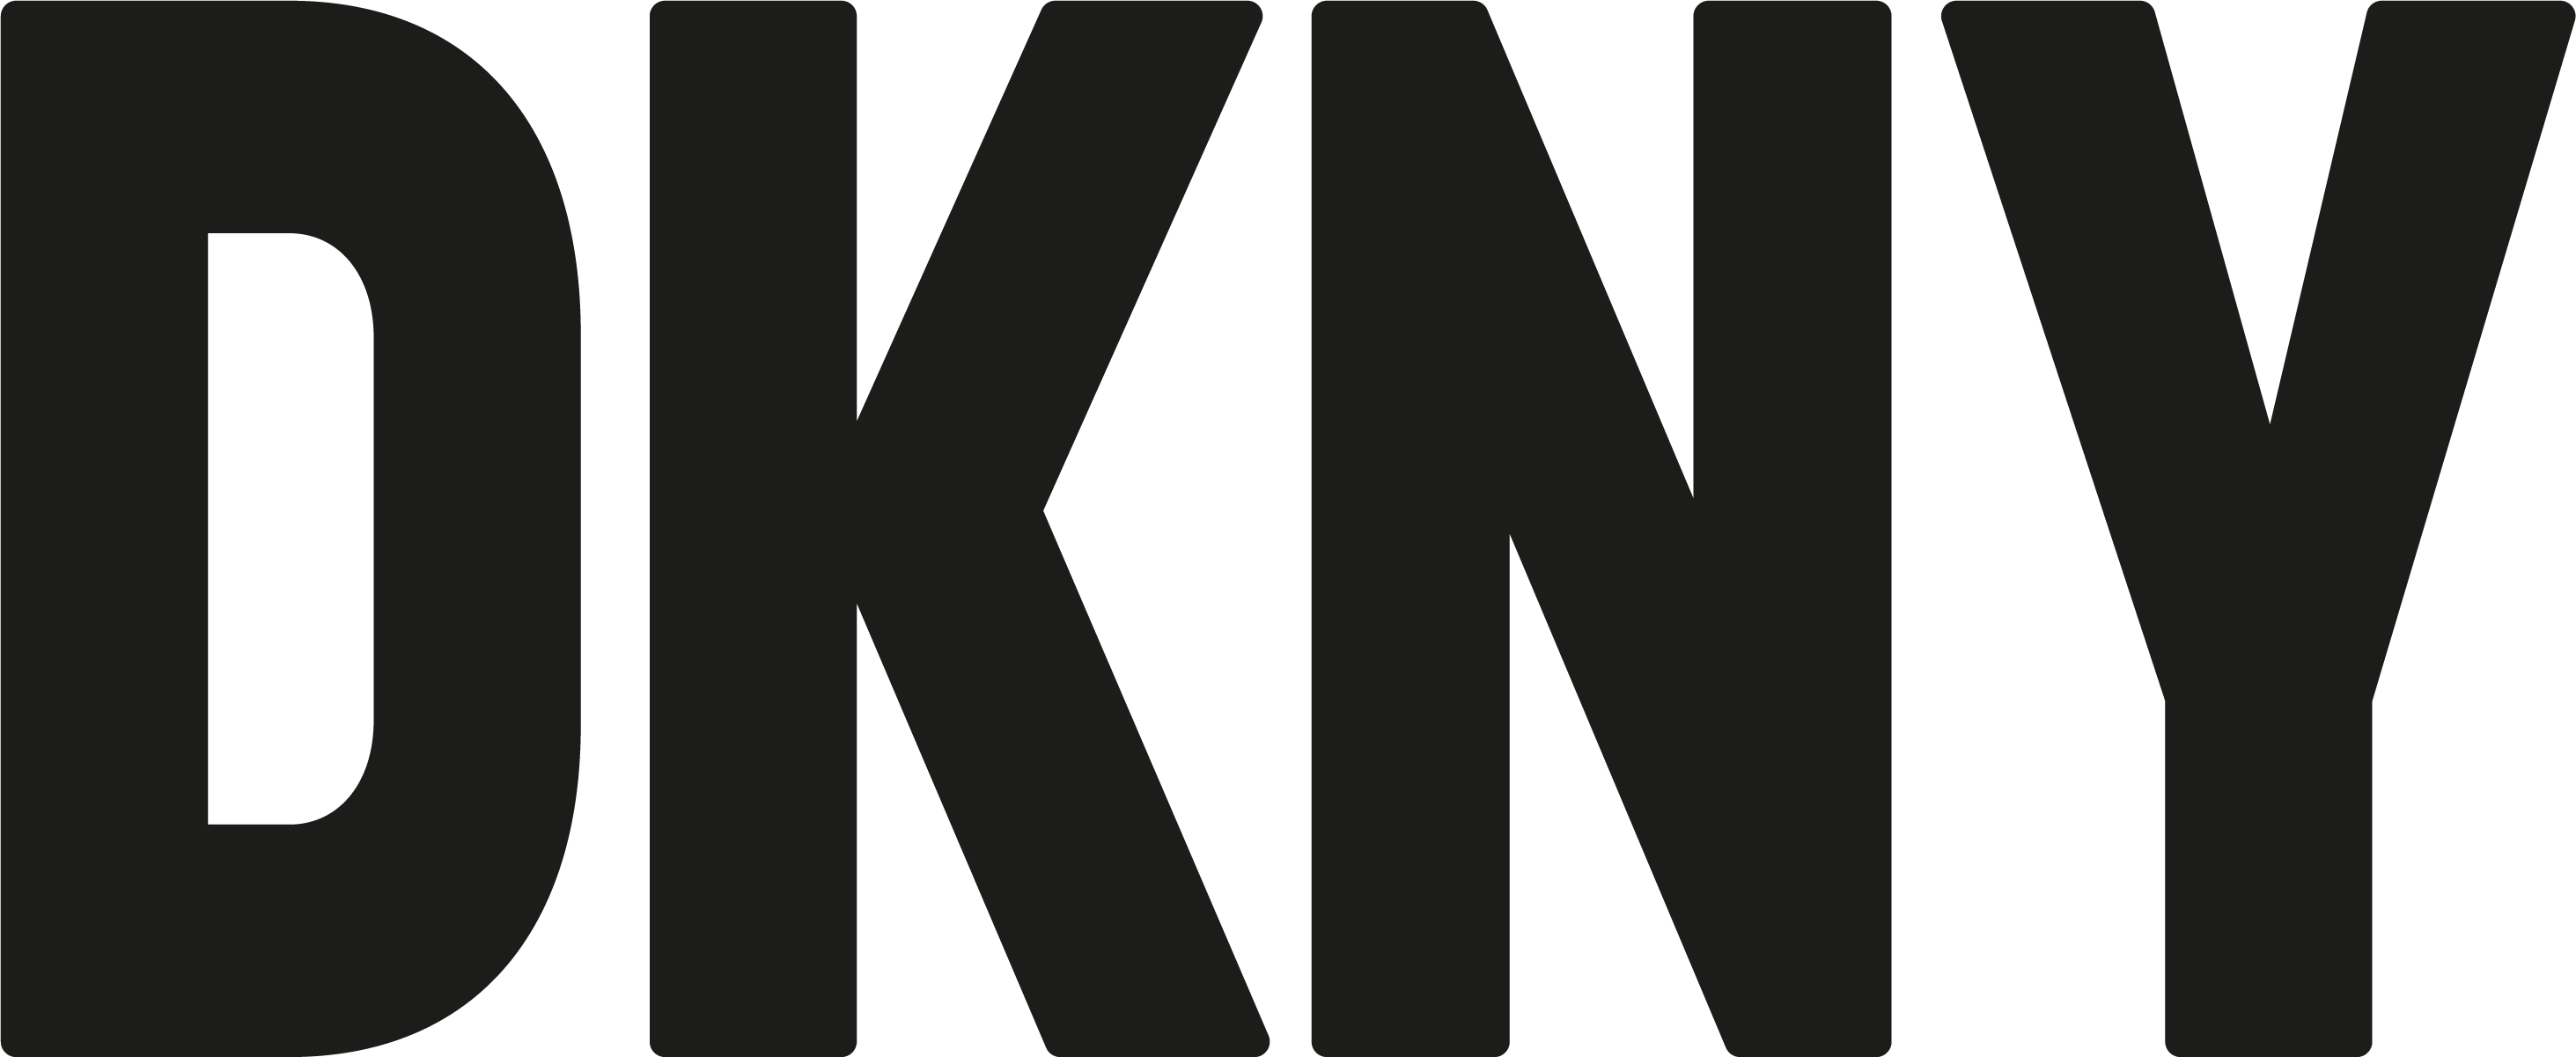 Logo Dkny Valor Histria Png Vector Sexiz Pix | Sexiz Pix